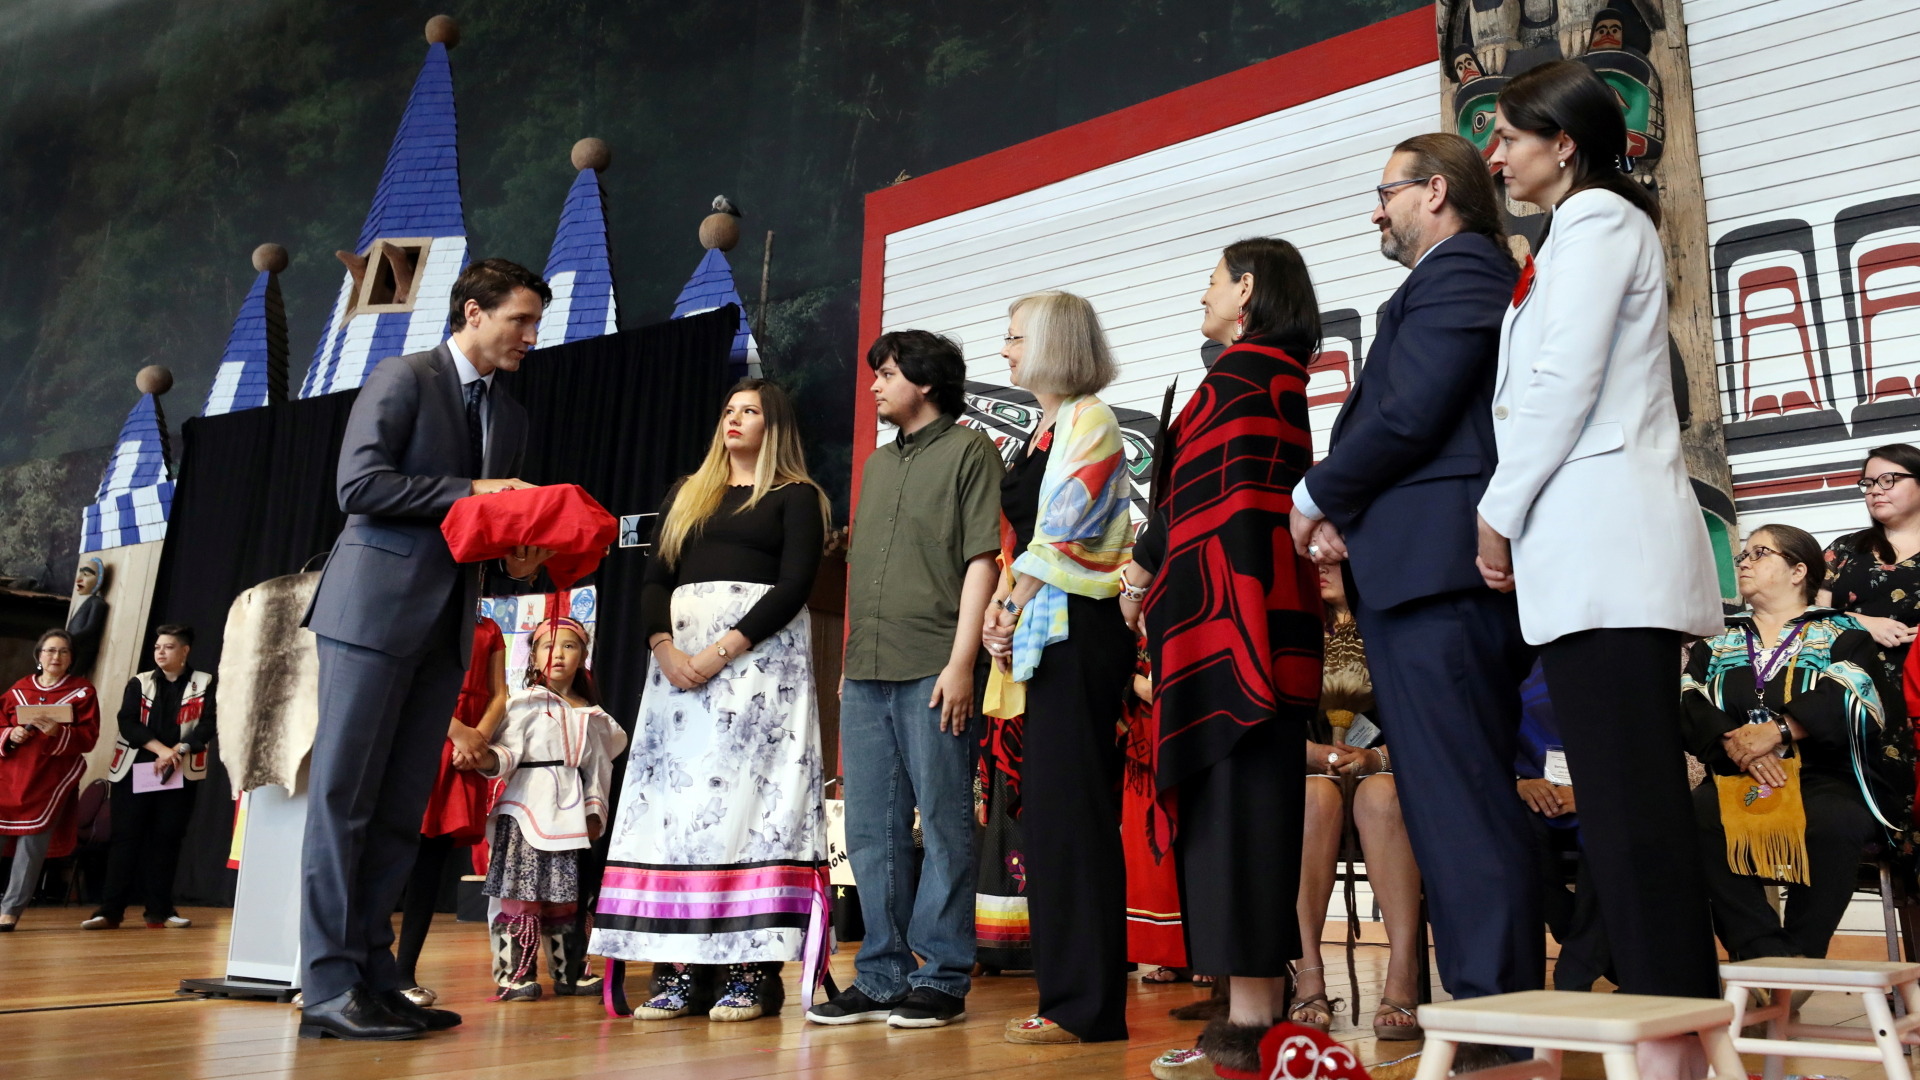 Kanadas Premier Trudeau (li.) mit Kommissionsmitgliedern | REUTERS